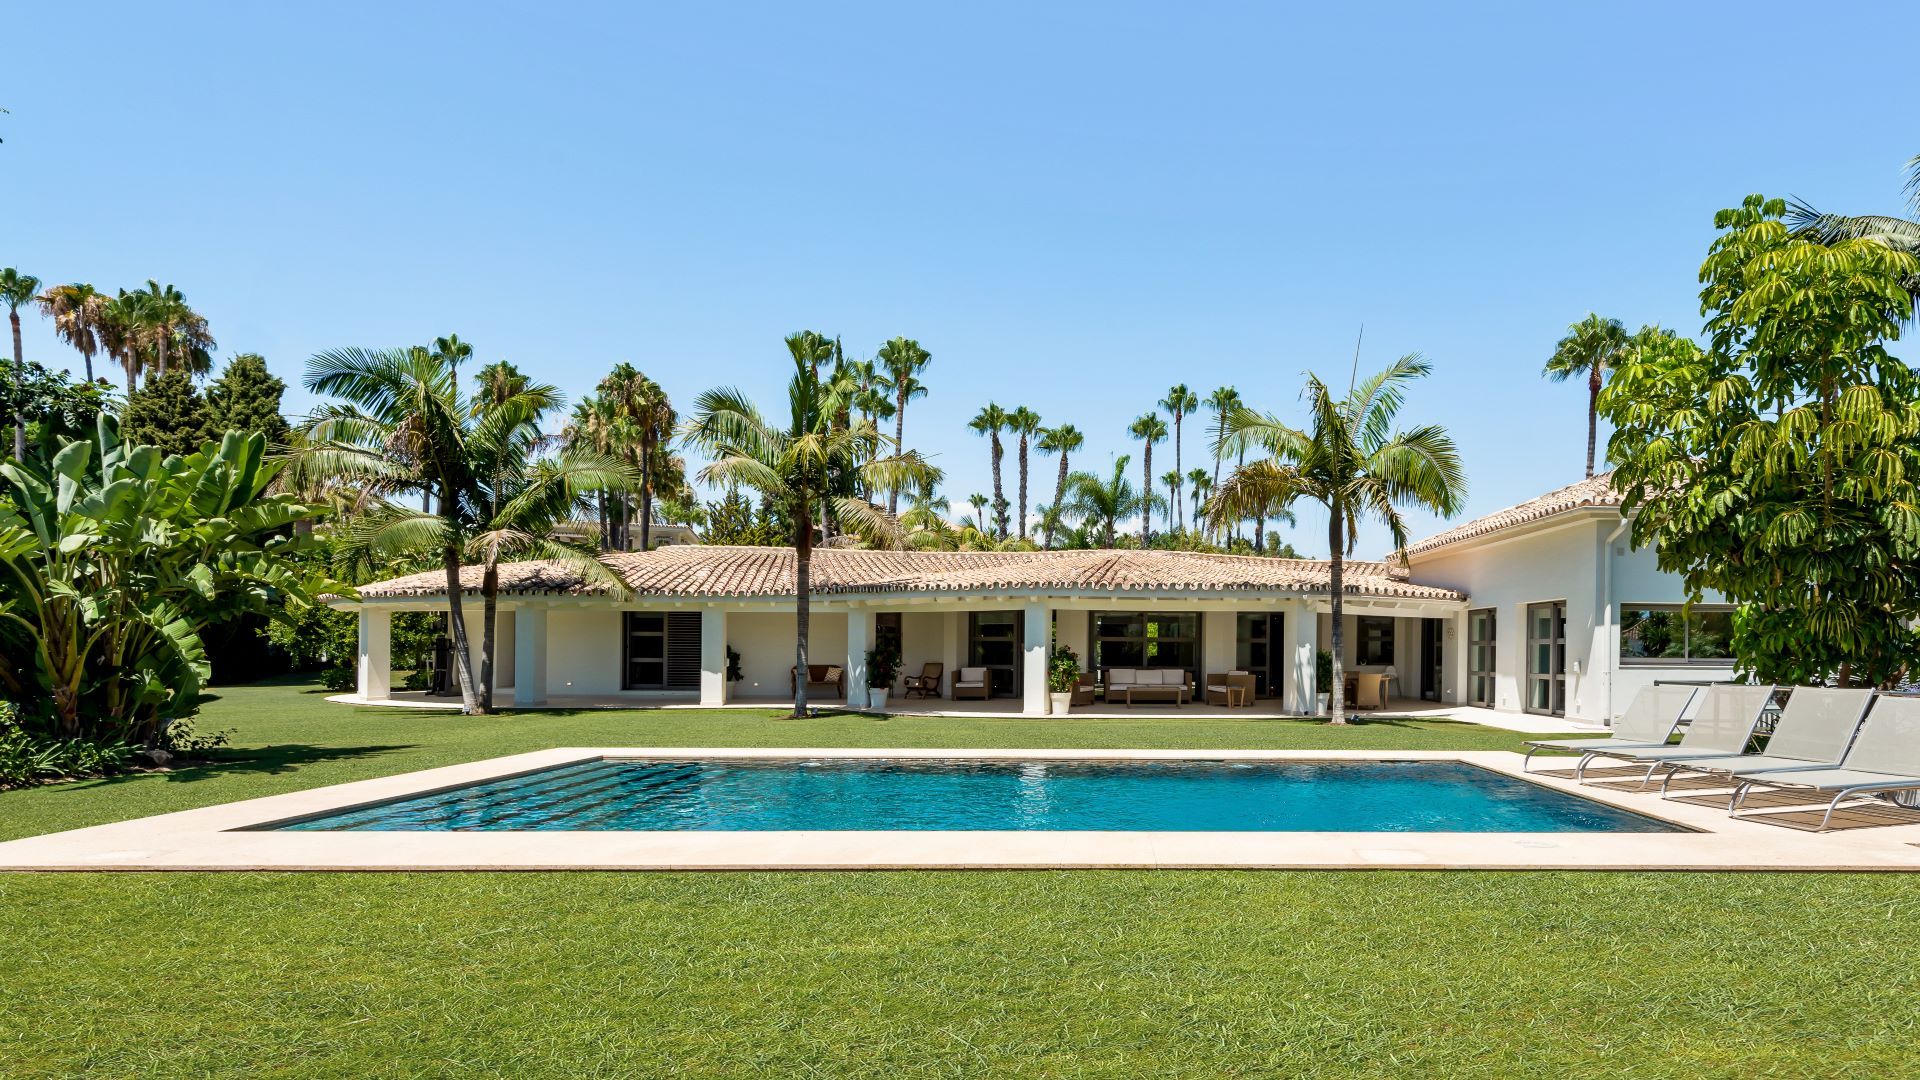 Spectacular modern villa with large plot in Nueva Andalucia, Marbella | Engel & Völkers Marbella